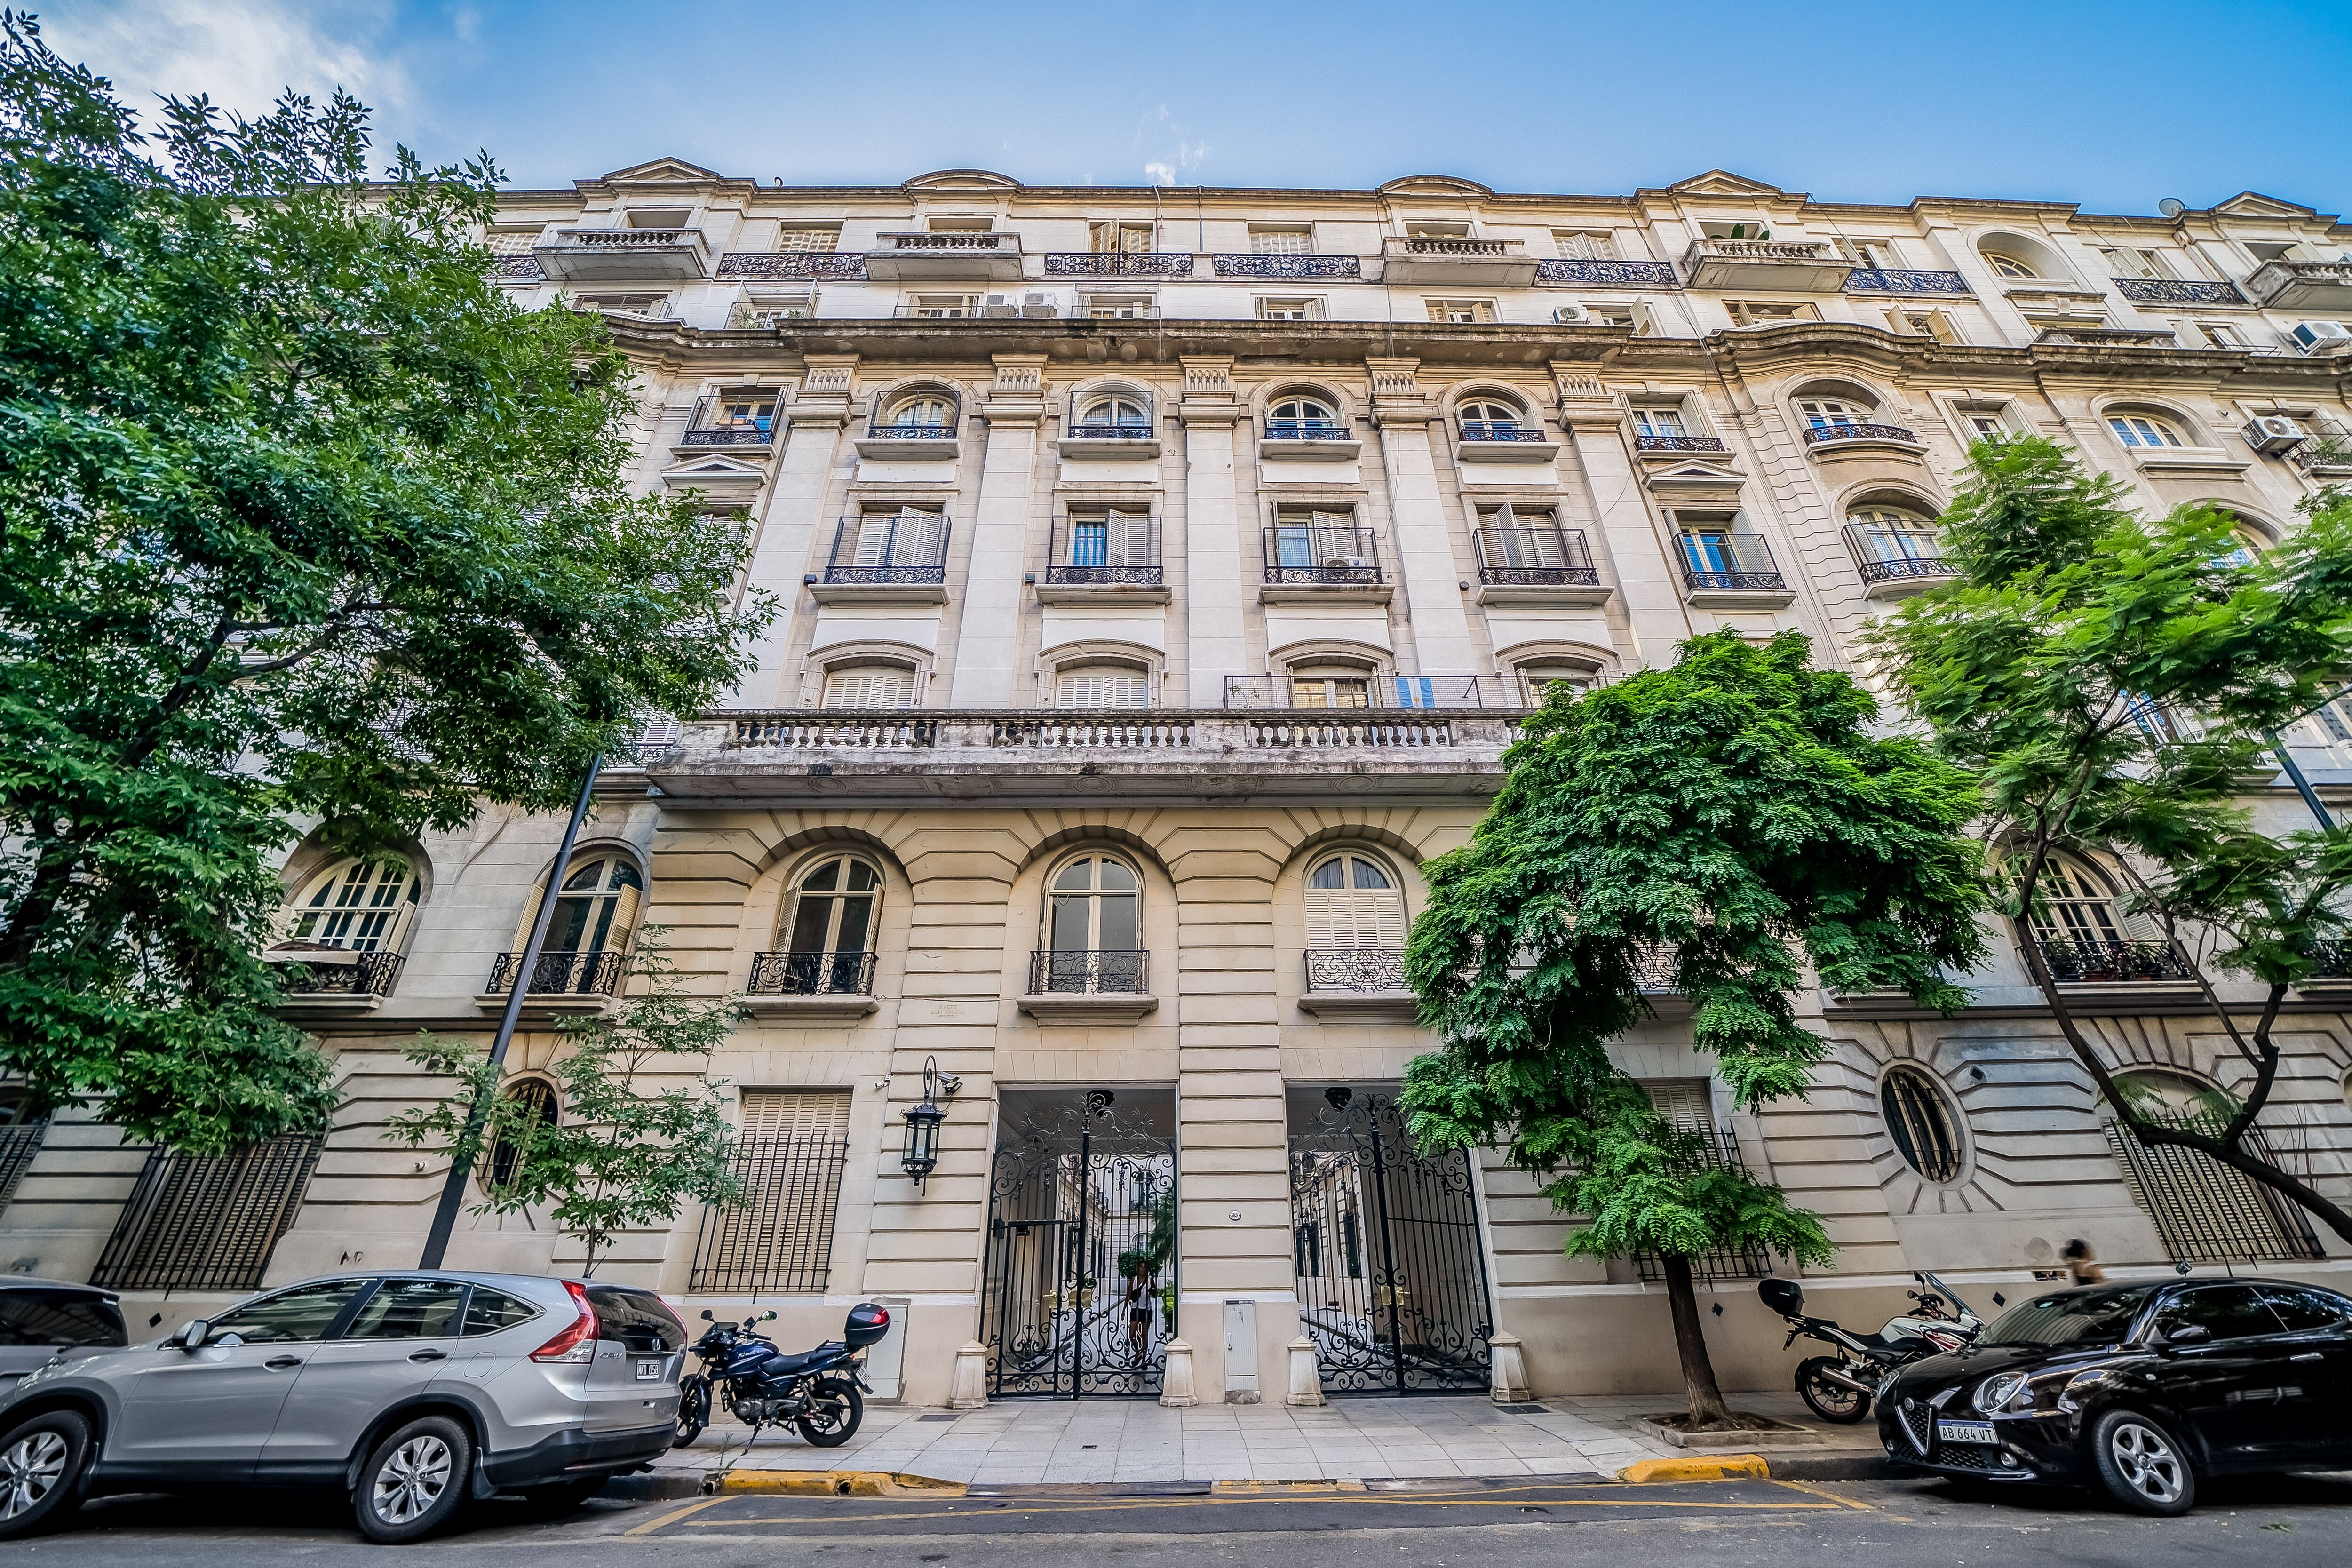 Hay lista de espera de inquilinos. El distinguido edificio de Palermo con vecinos ilustres en el que muchos porteños sueñan con vivir